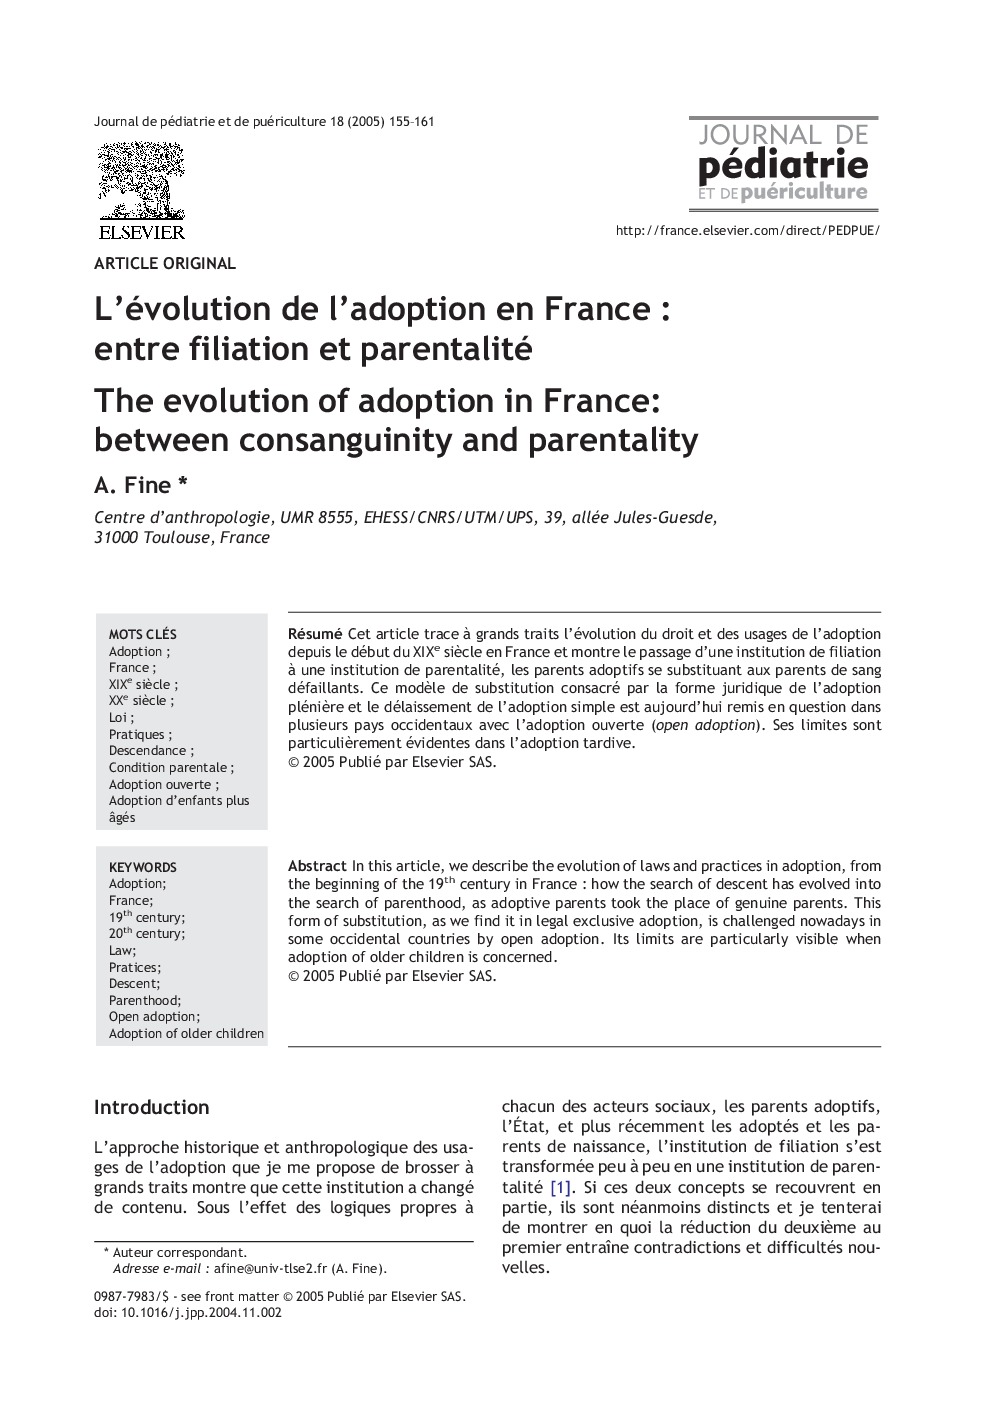 L'évolution de l'adoption en France : entre filiation et parentalité